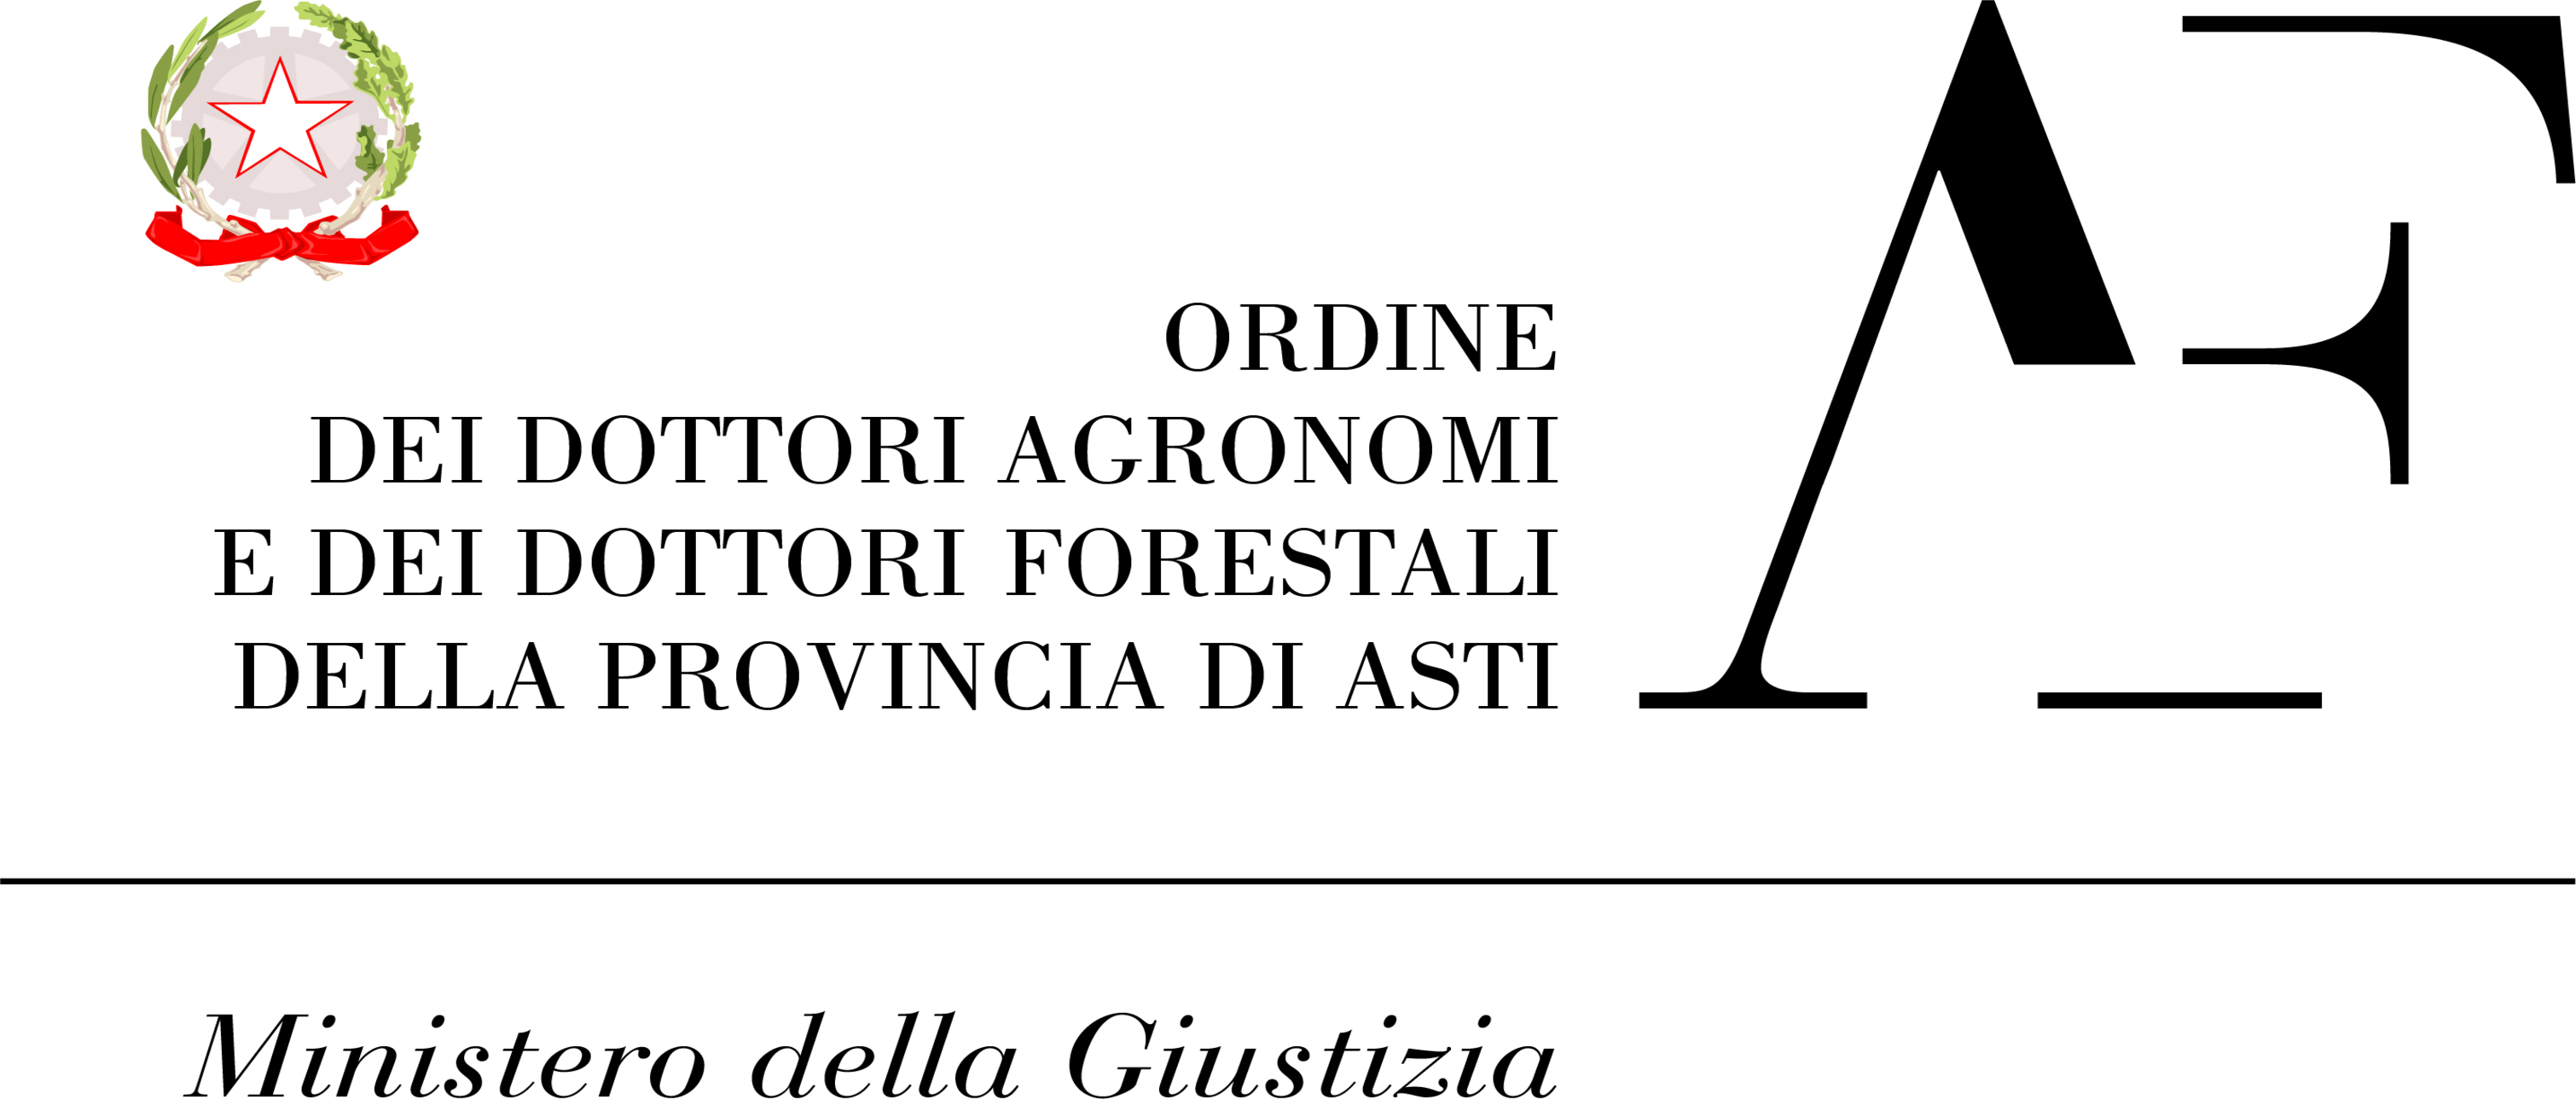 Ordine dei dottori agronomi e forestali della provincia di Asti